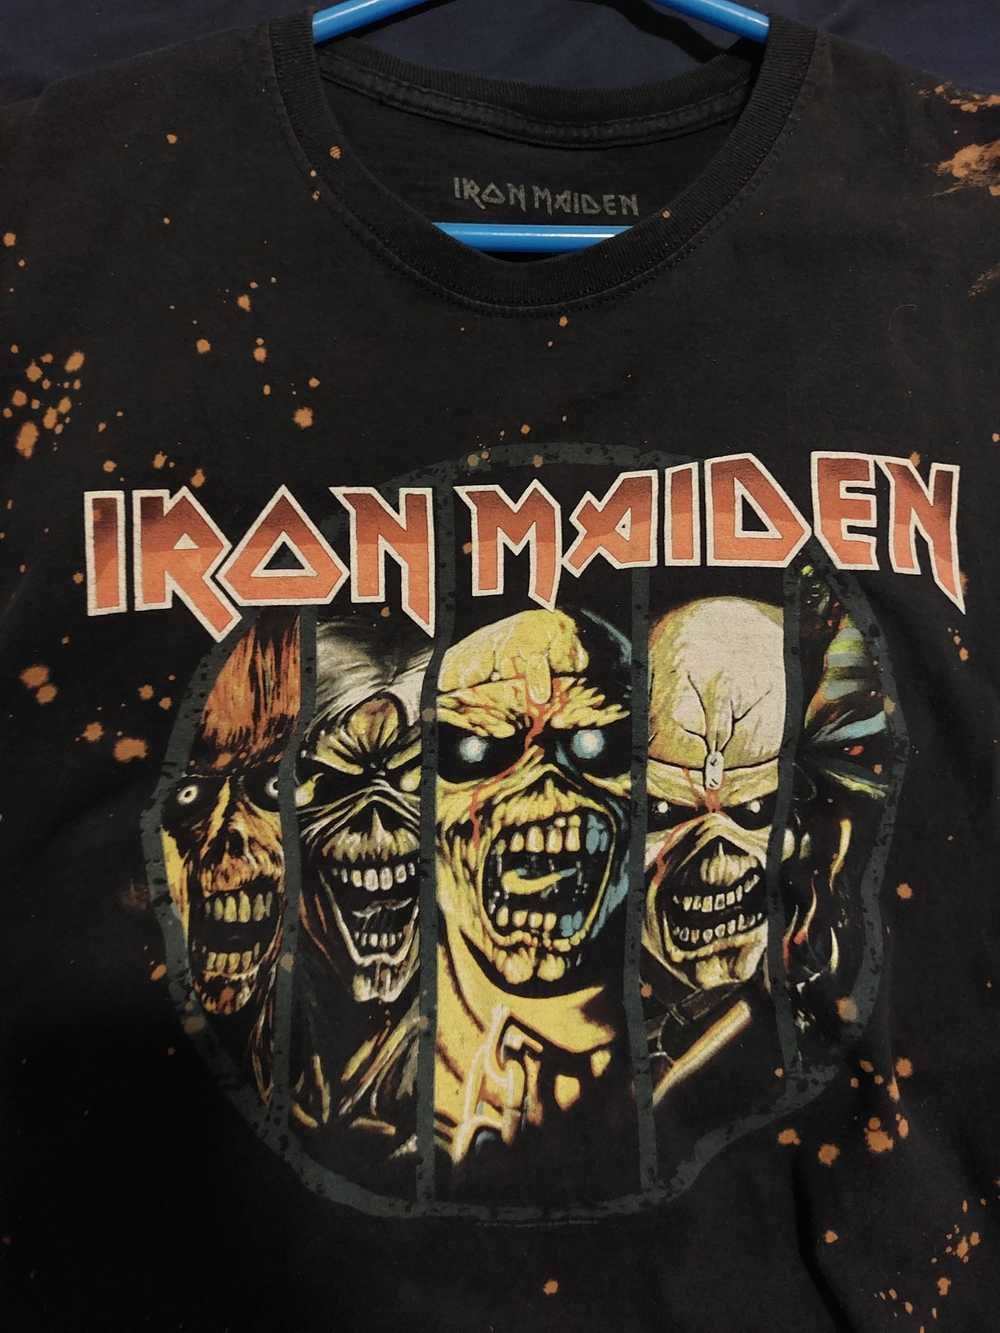 Iron Maiden Iron maiden - image 2